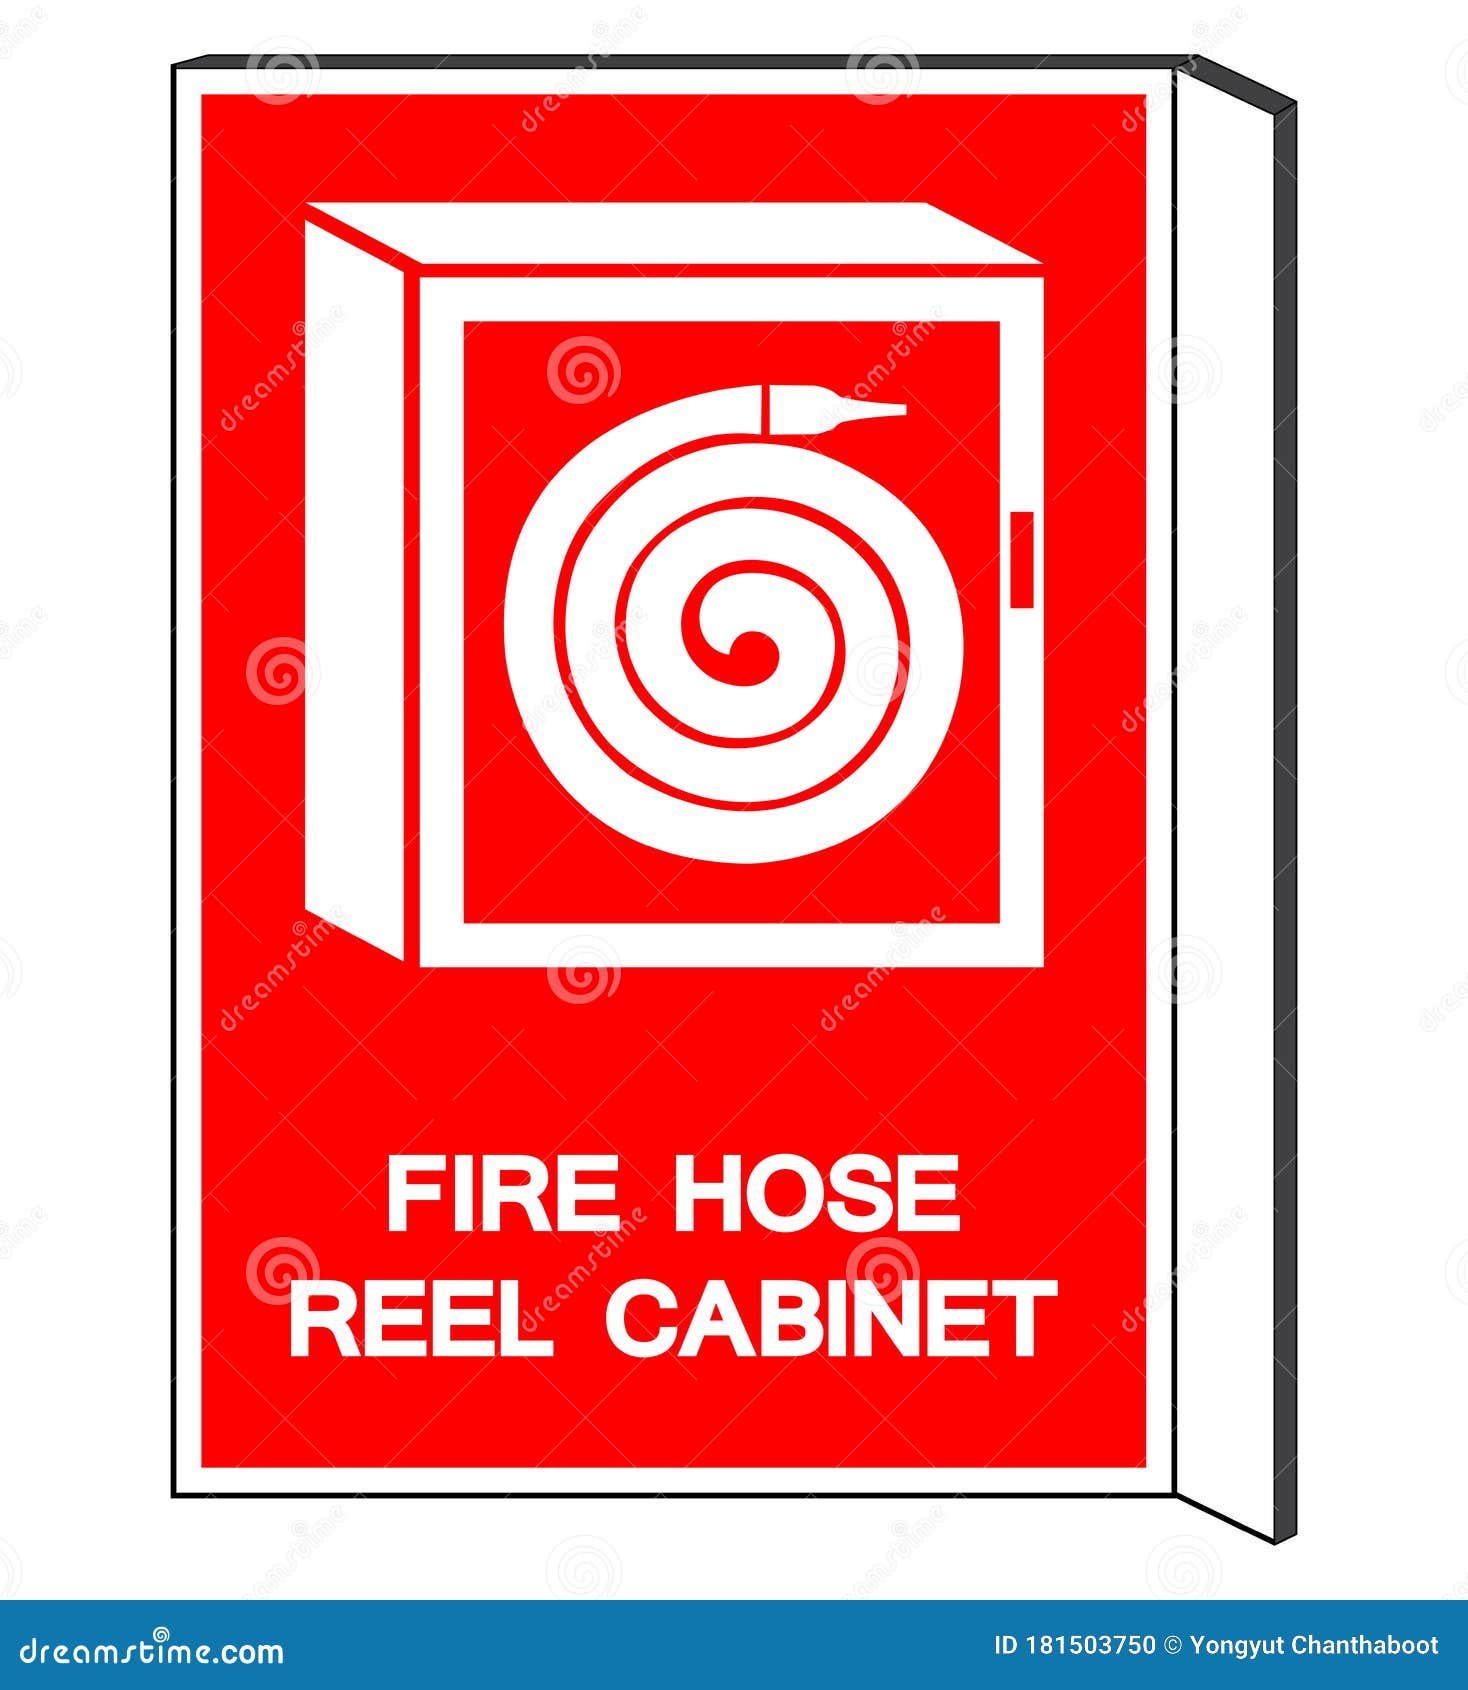 https://thumbs.dreamstime.com/z/fire-hose-reel-cabinet-symbol-sign-vector-illustration-isolate-white-background-label-eps-fire-hose-reel-cabinet-symbol-sign-181503750.jpg